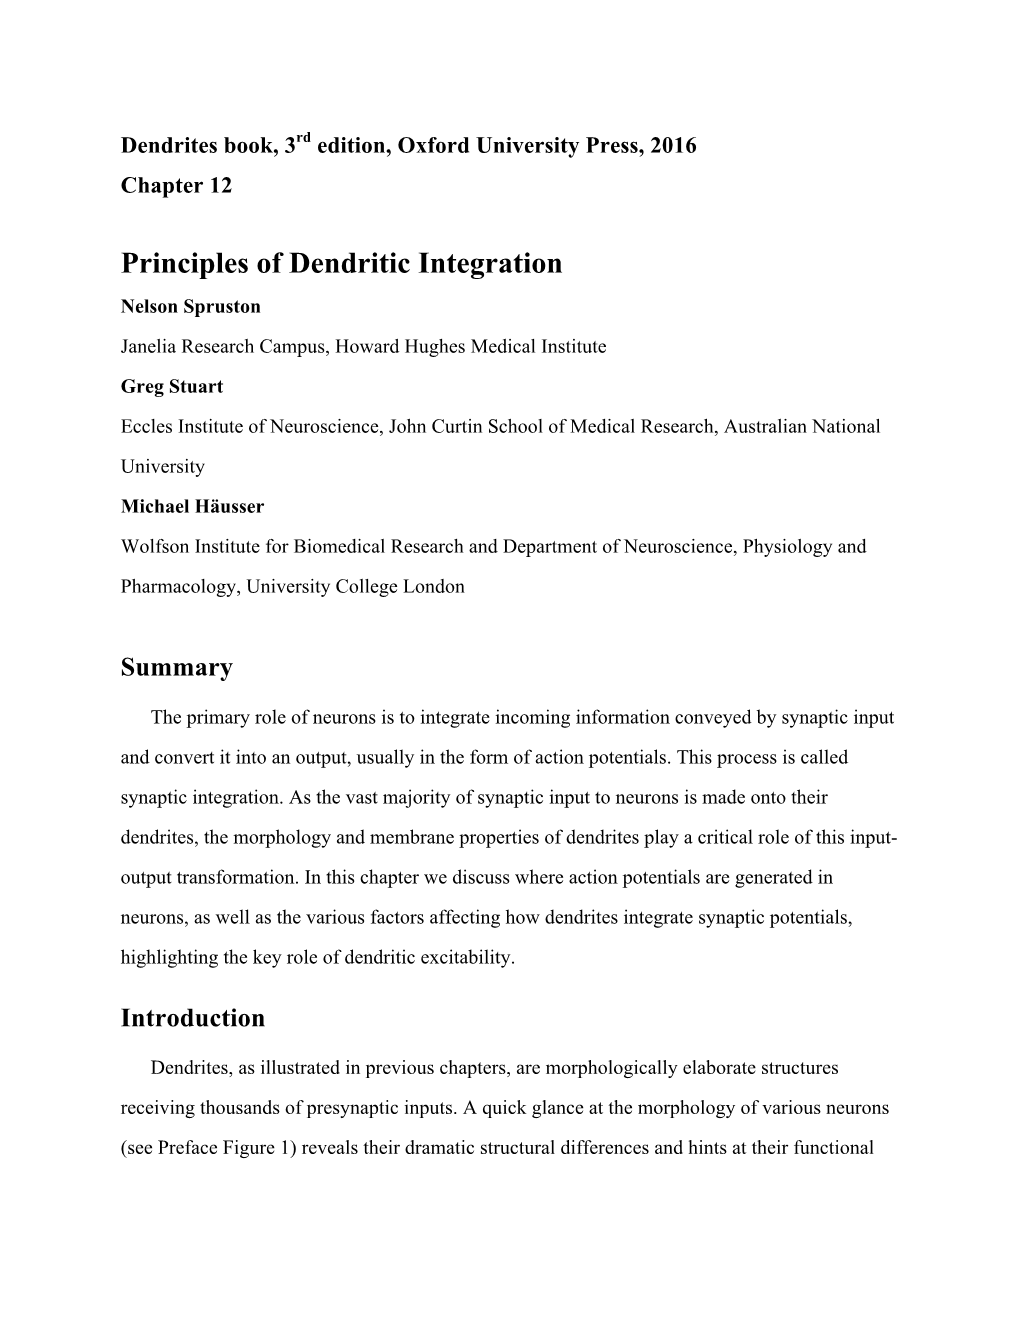 Principles of Dendritic Integration